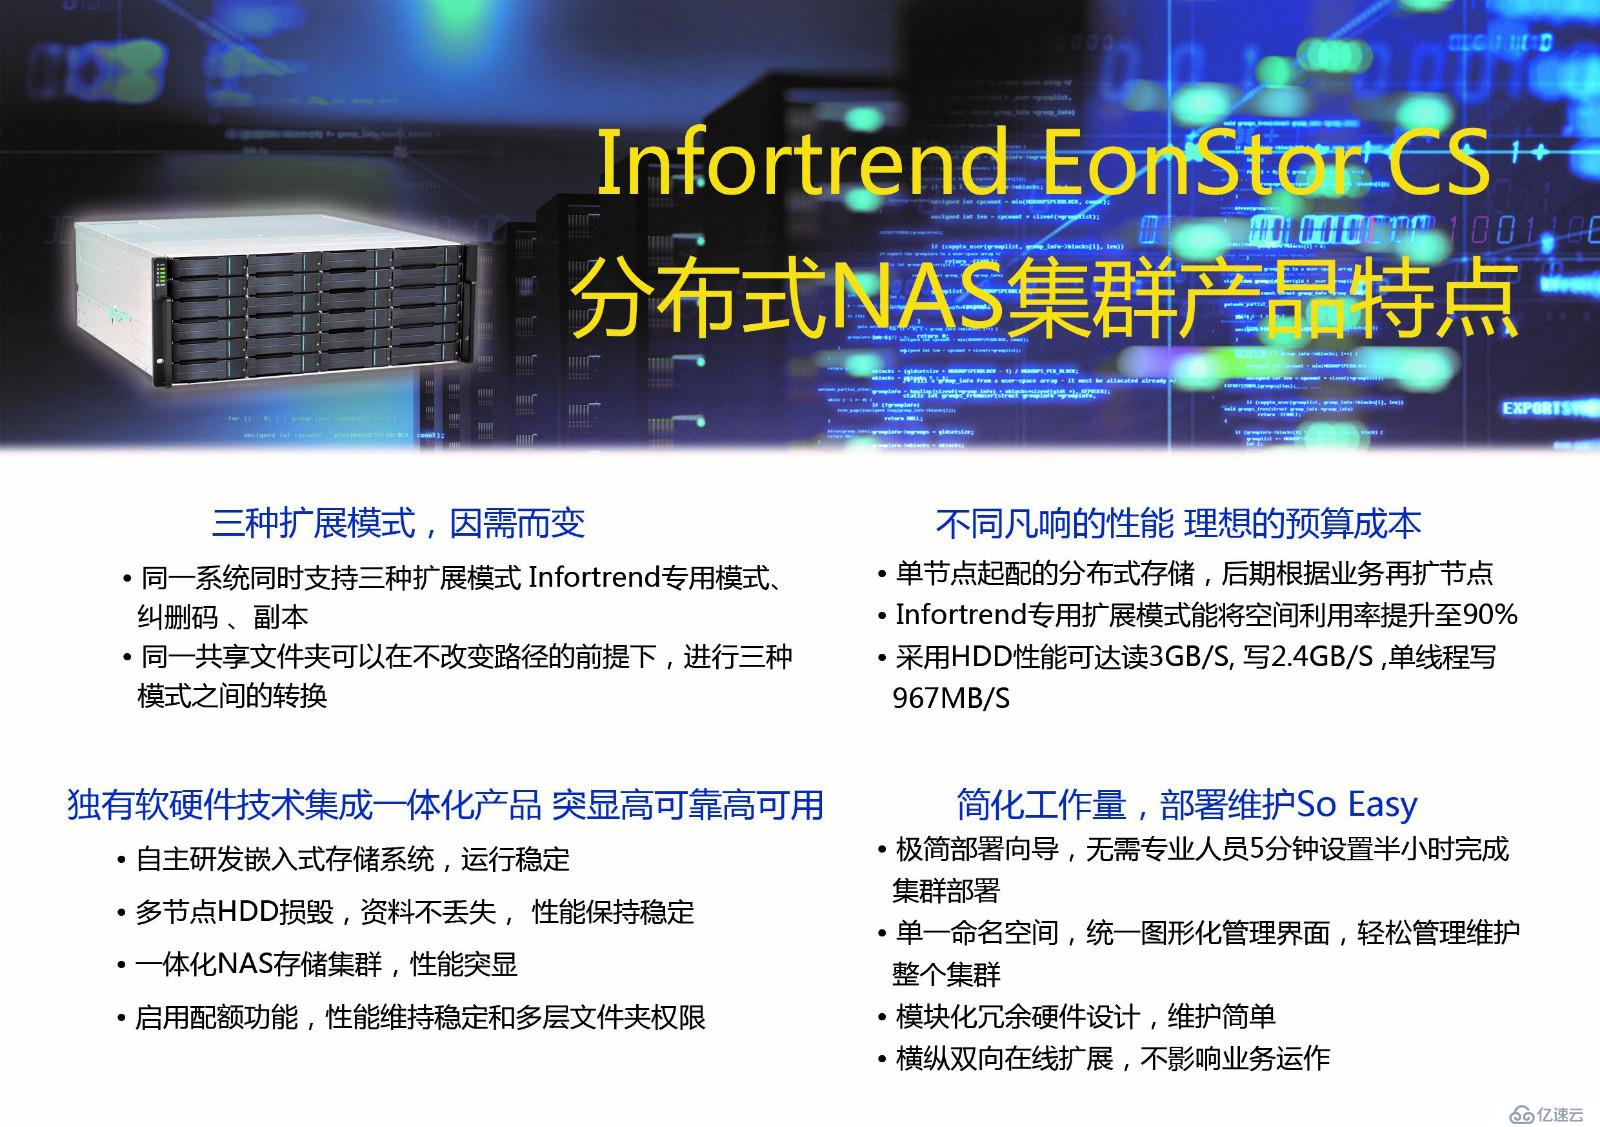  Infortrend EonStor CS分布式NAS集群的优点